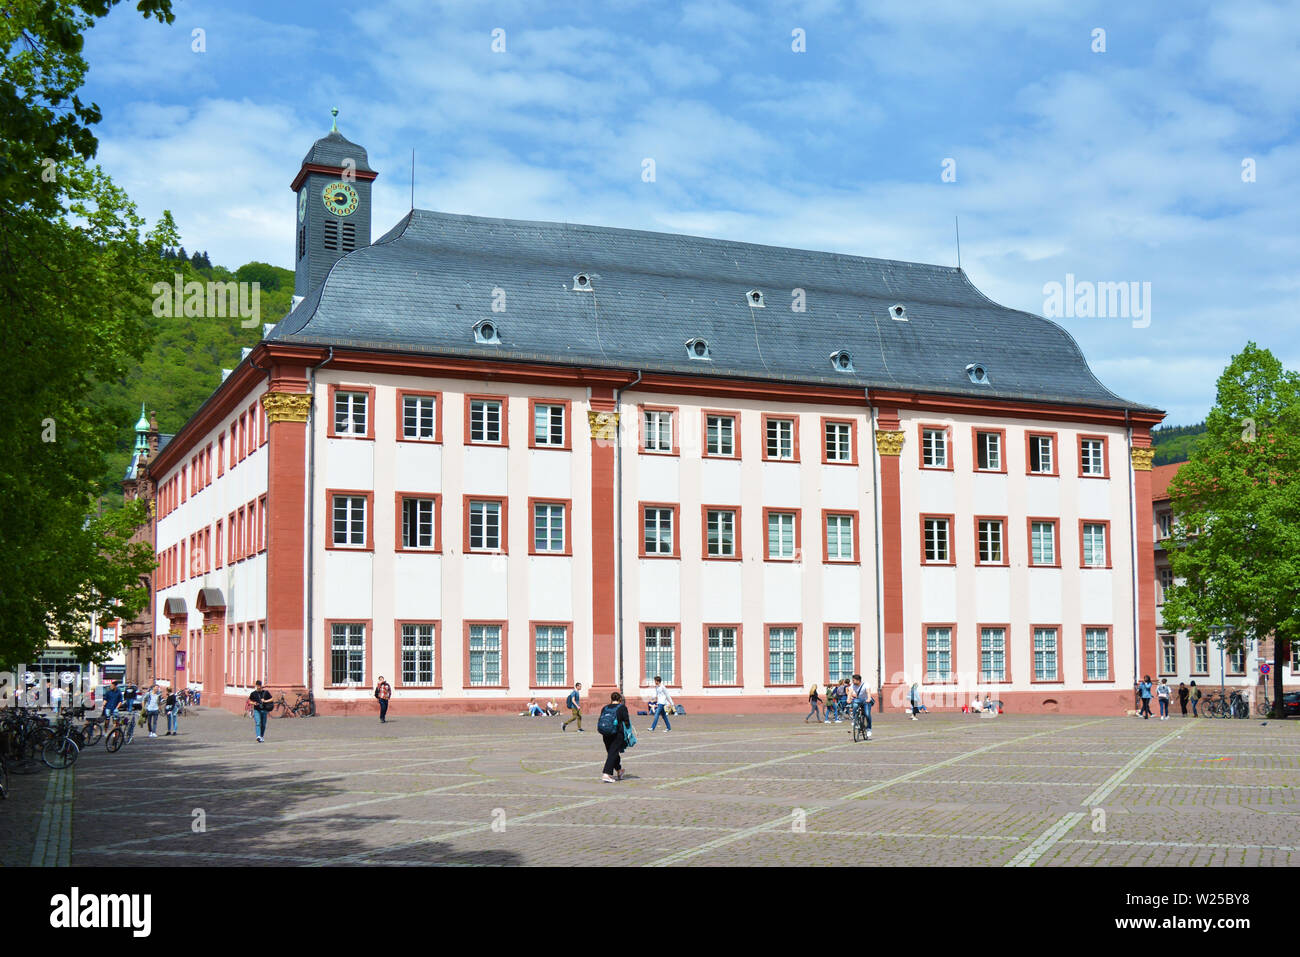 Vista completa del antiguo e histórico edificio universitario que se utiliza ahora como reunión o una sala de conciertos en el centro de la ciudad de Heidelberg, Alemania Foto de stock